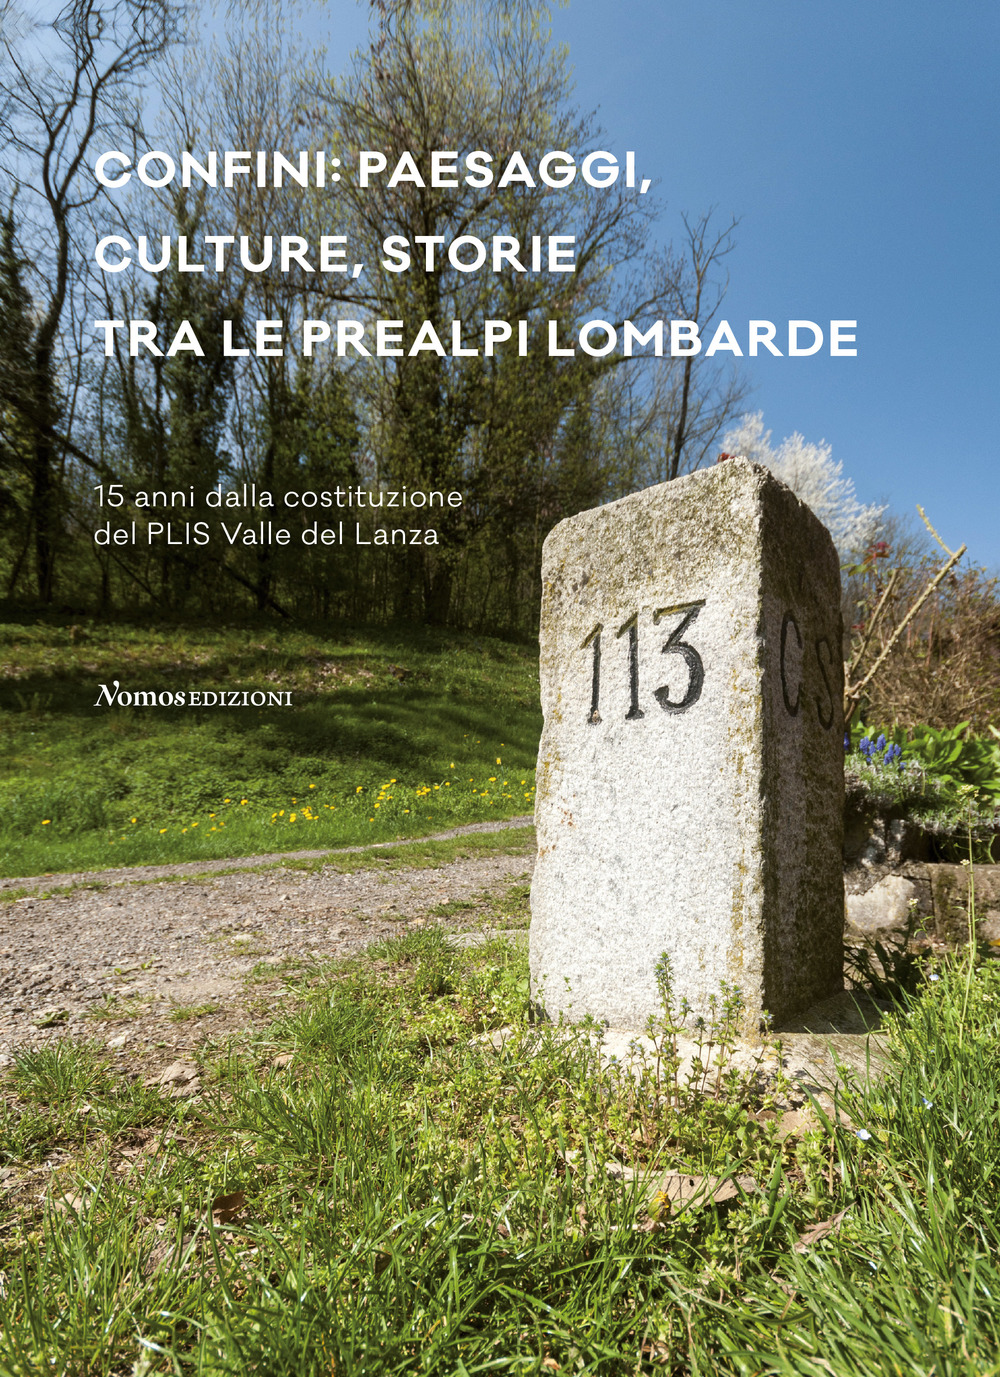 Confini: paesaggi, culture, storie tra le prealpi lombarde. 15 anni dalla costituzione del PLIS Valle del Lanza